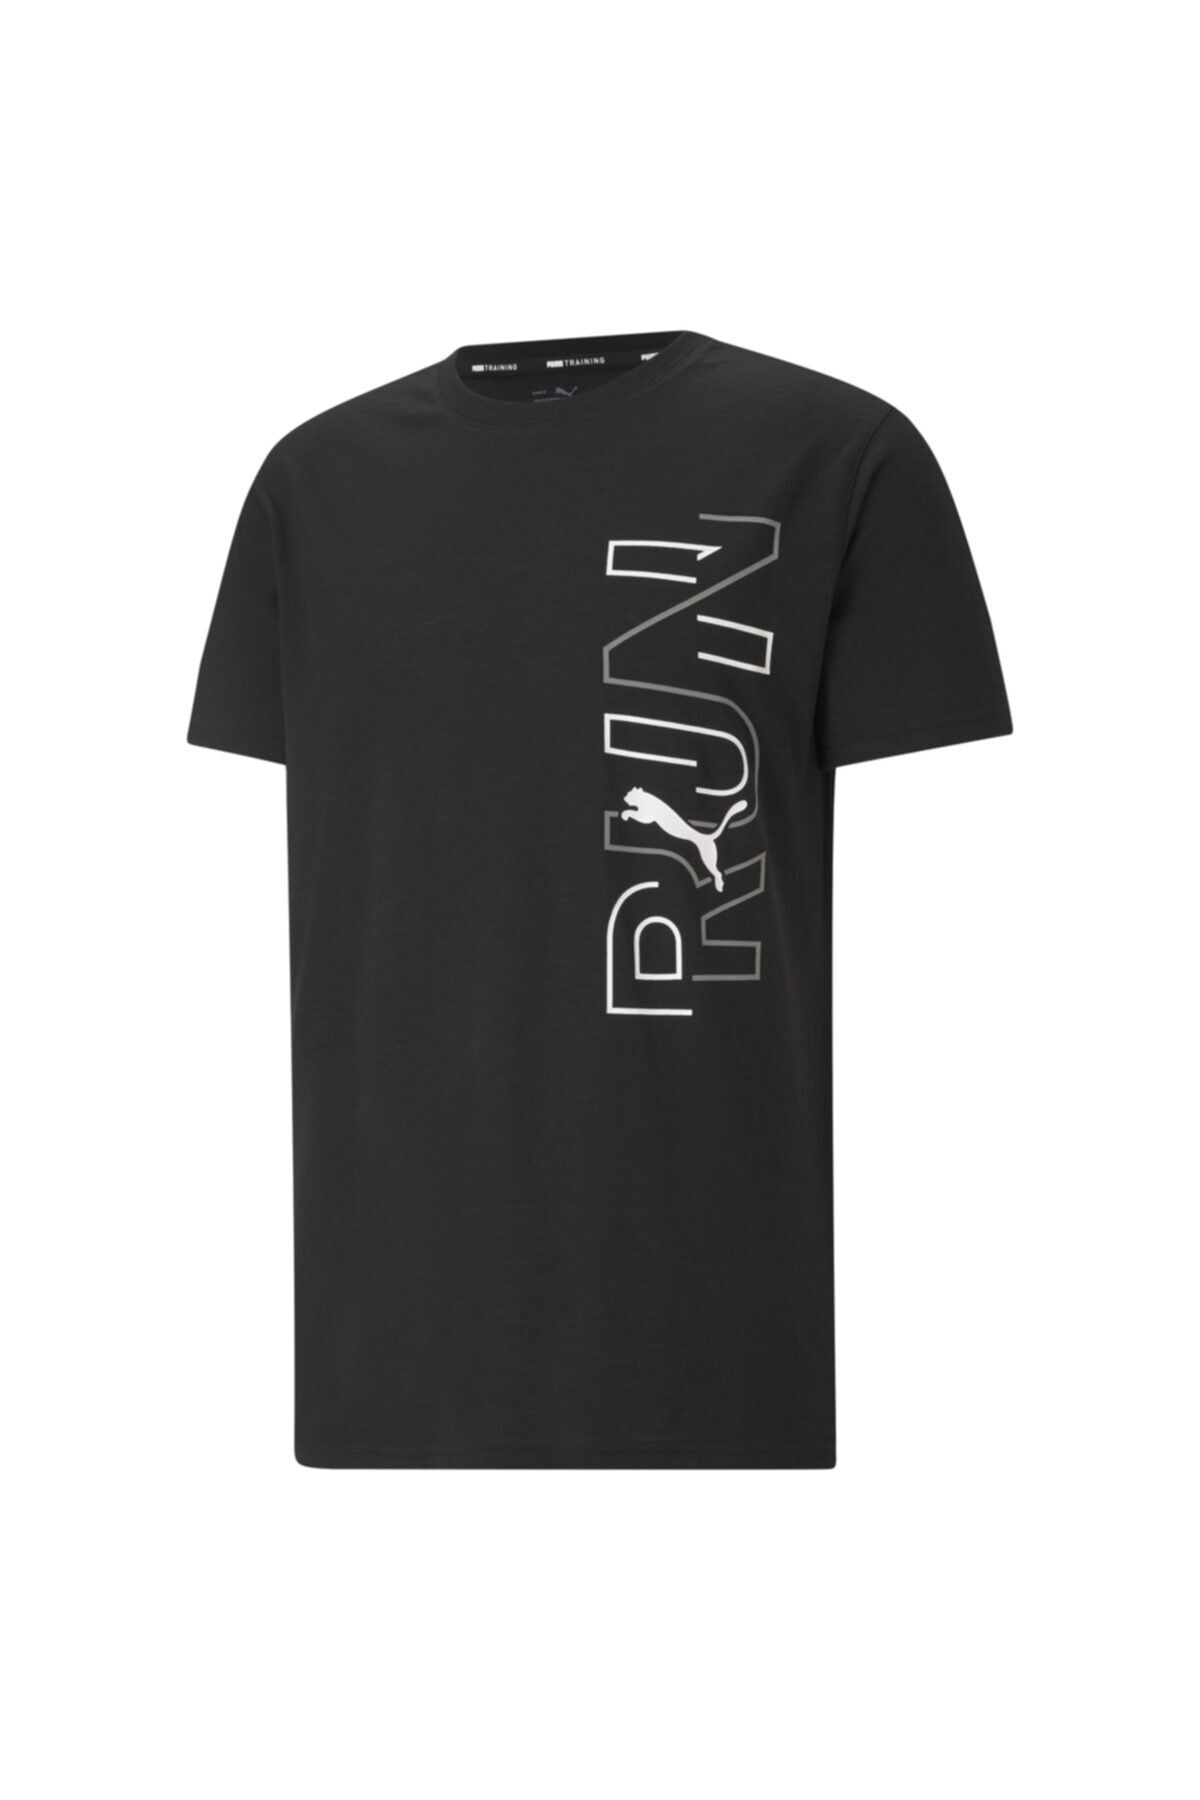 Puma PERFORMANCE RUNNING GRAPH Siyah Erkek T-Shirt 101085317